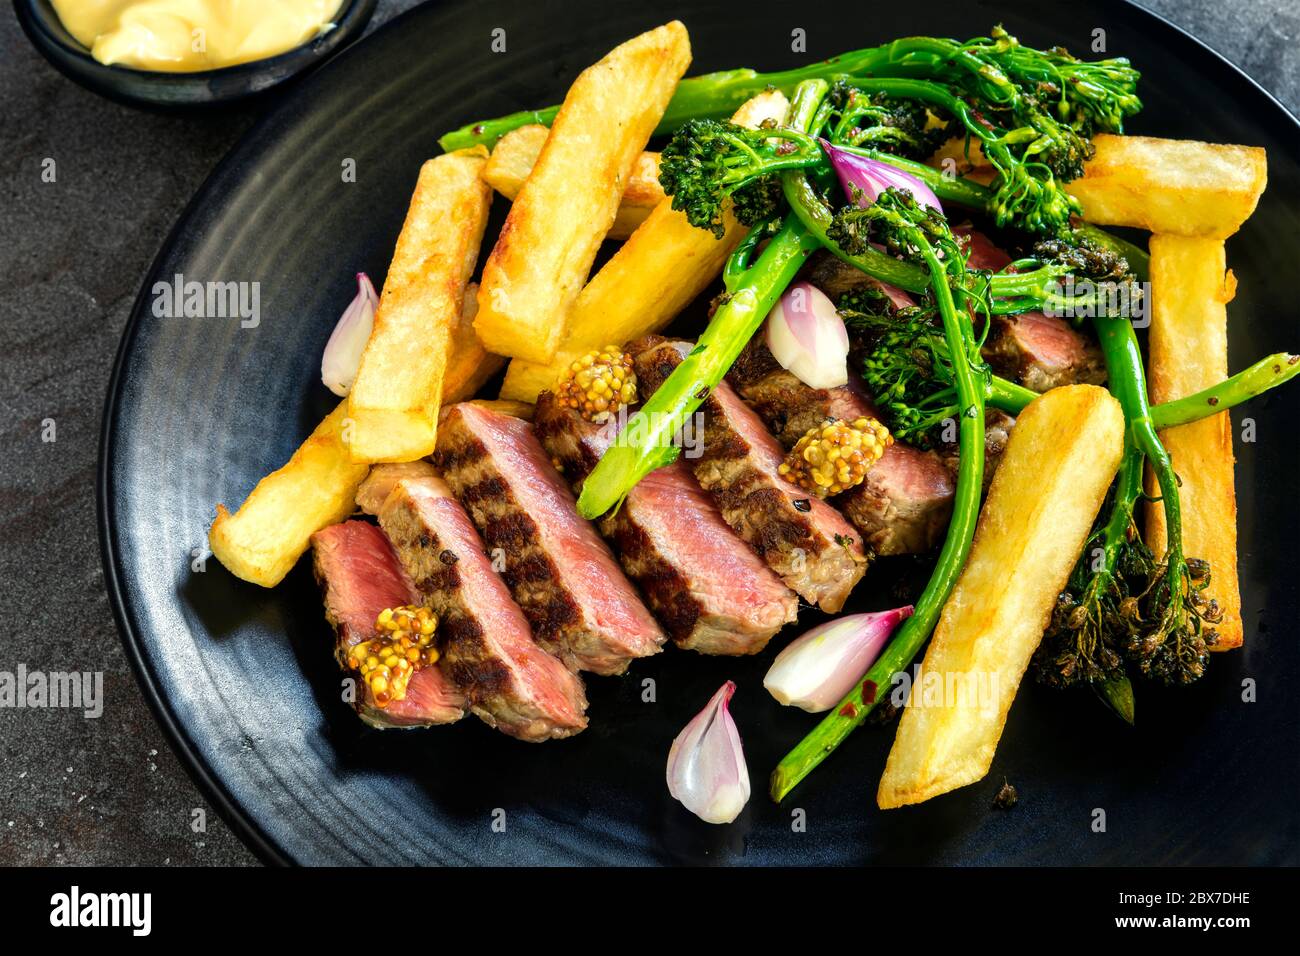 Steak et frites au broccolini, moutarde à la baleine, échalotes marinées et sauce béarnaise. Portreuse en tranches. Banque D'Images